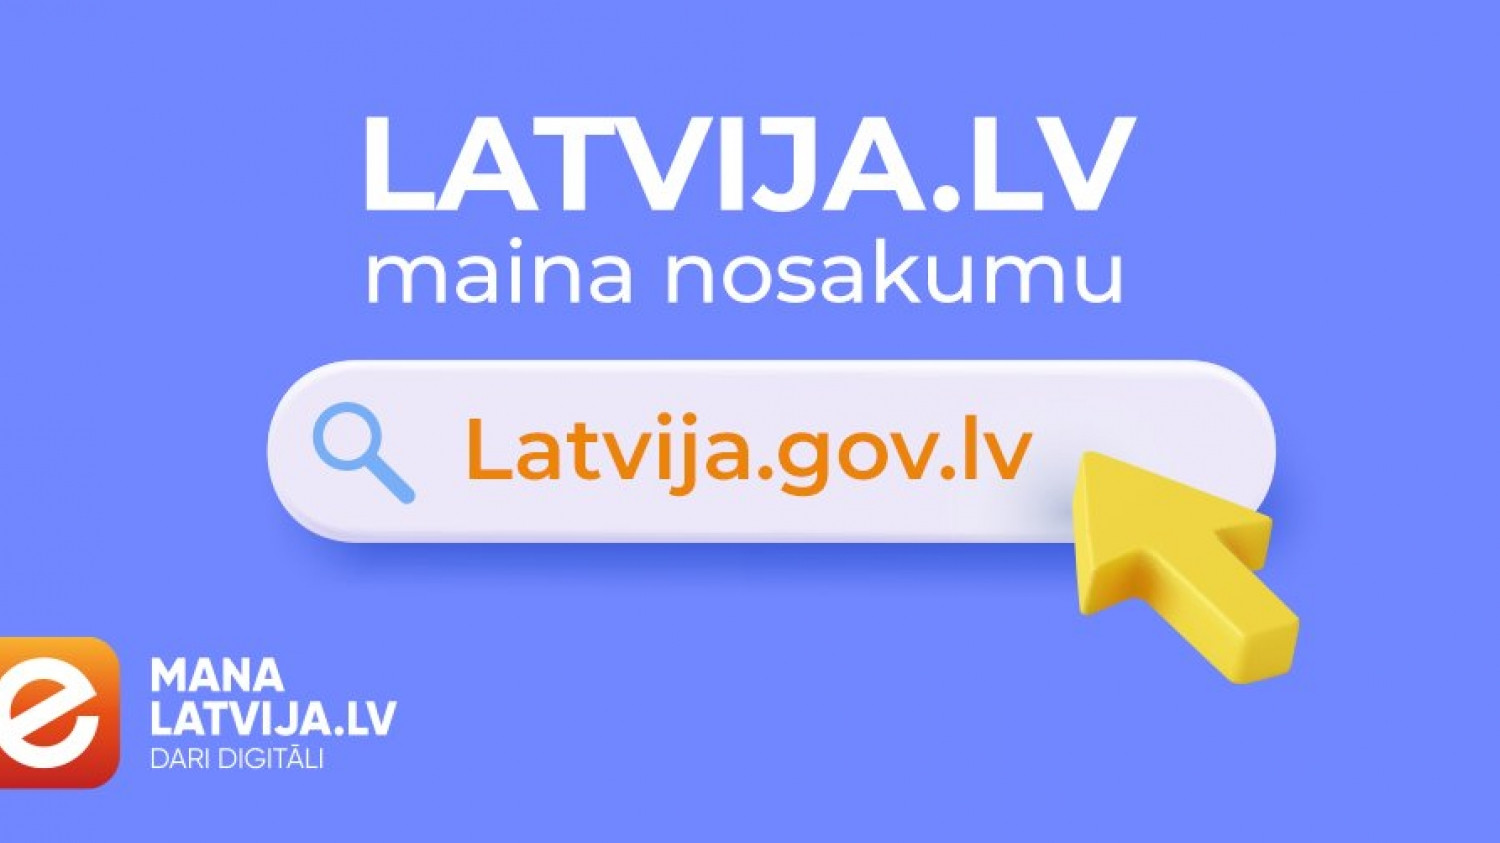 Valsts portālam turpmāk būs jauns domēns – latvija.gov.lv